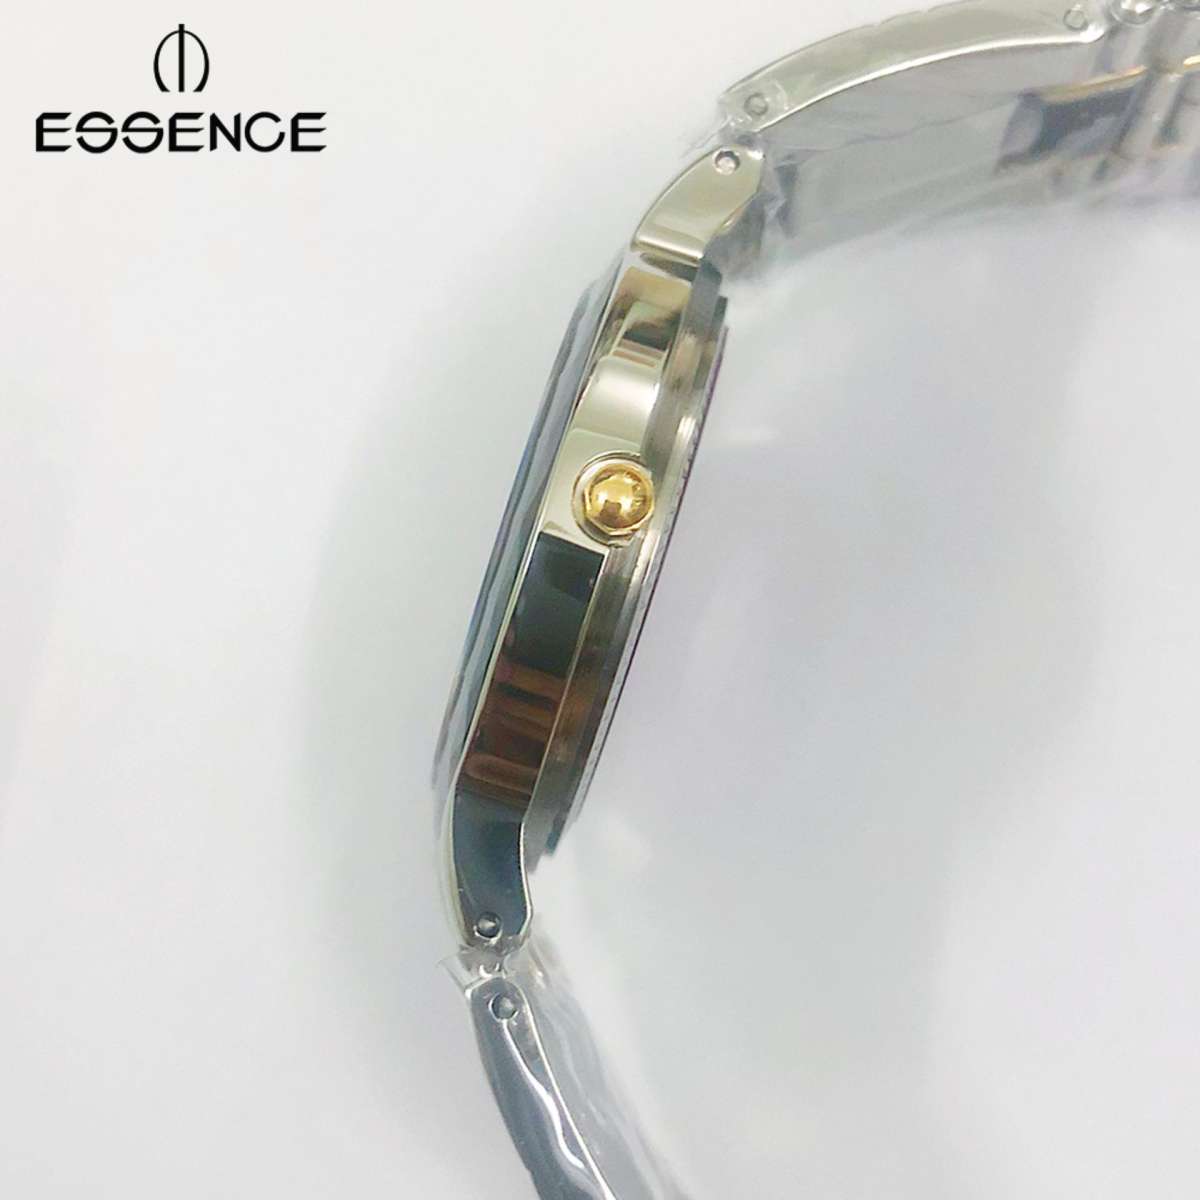 Đồng hồ ESSENCE ES20702M NỮ trắng đá xanh, kính Saphire, chống nước - Casual watch with ESSENCE Style